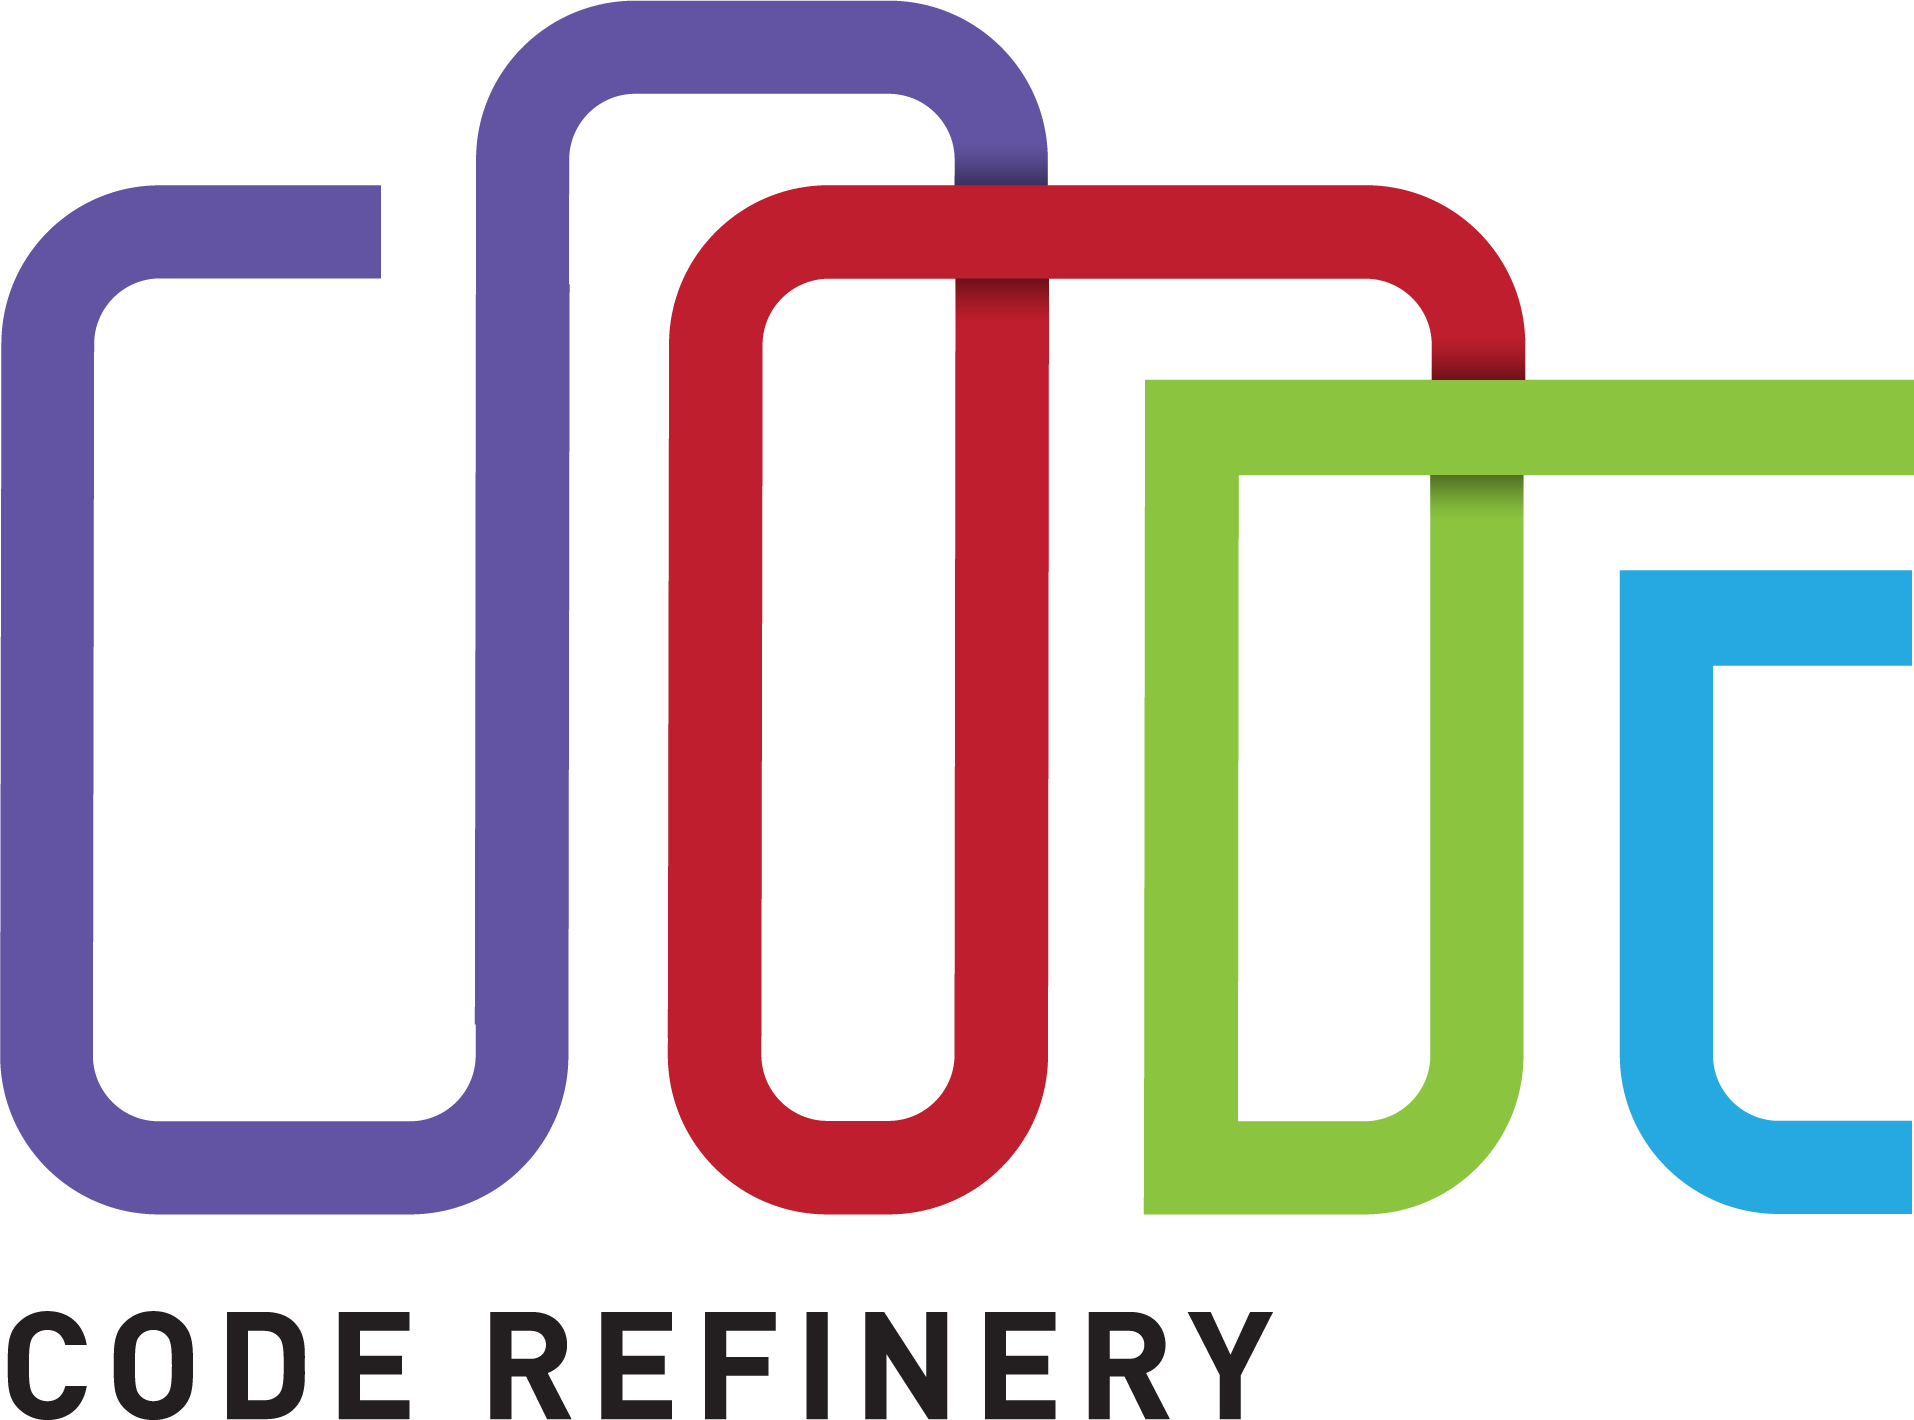 Code Refinery